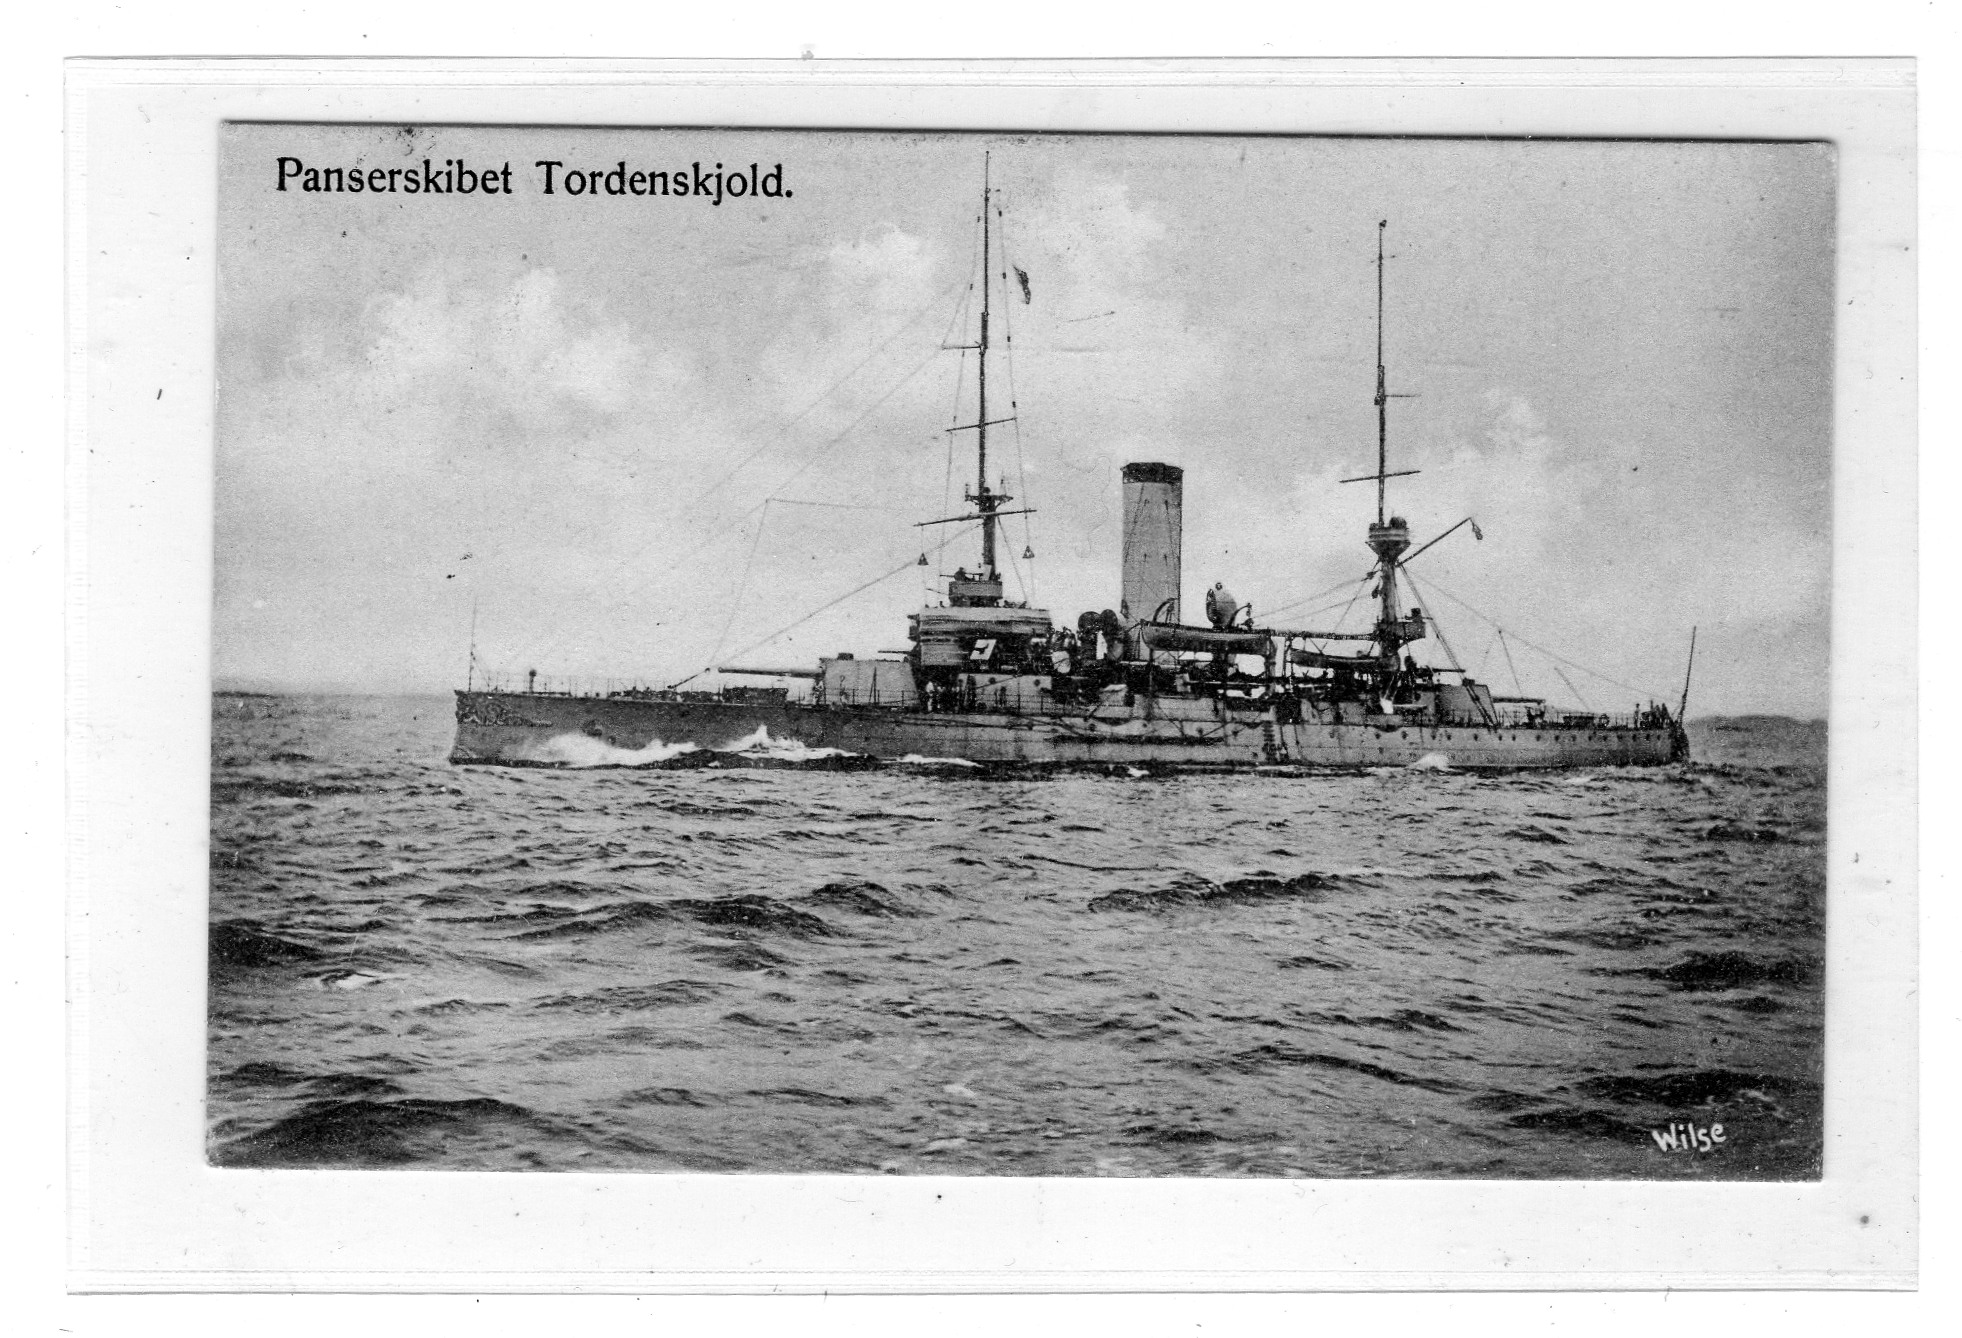 Panserskibet Tordenskjold Wilse st Horten 1908